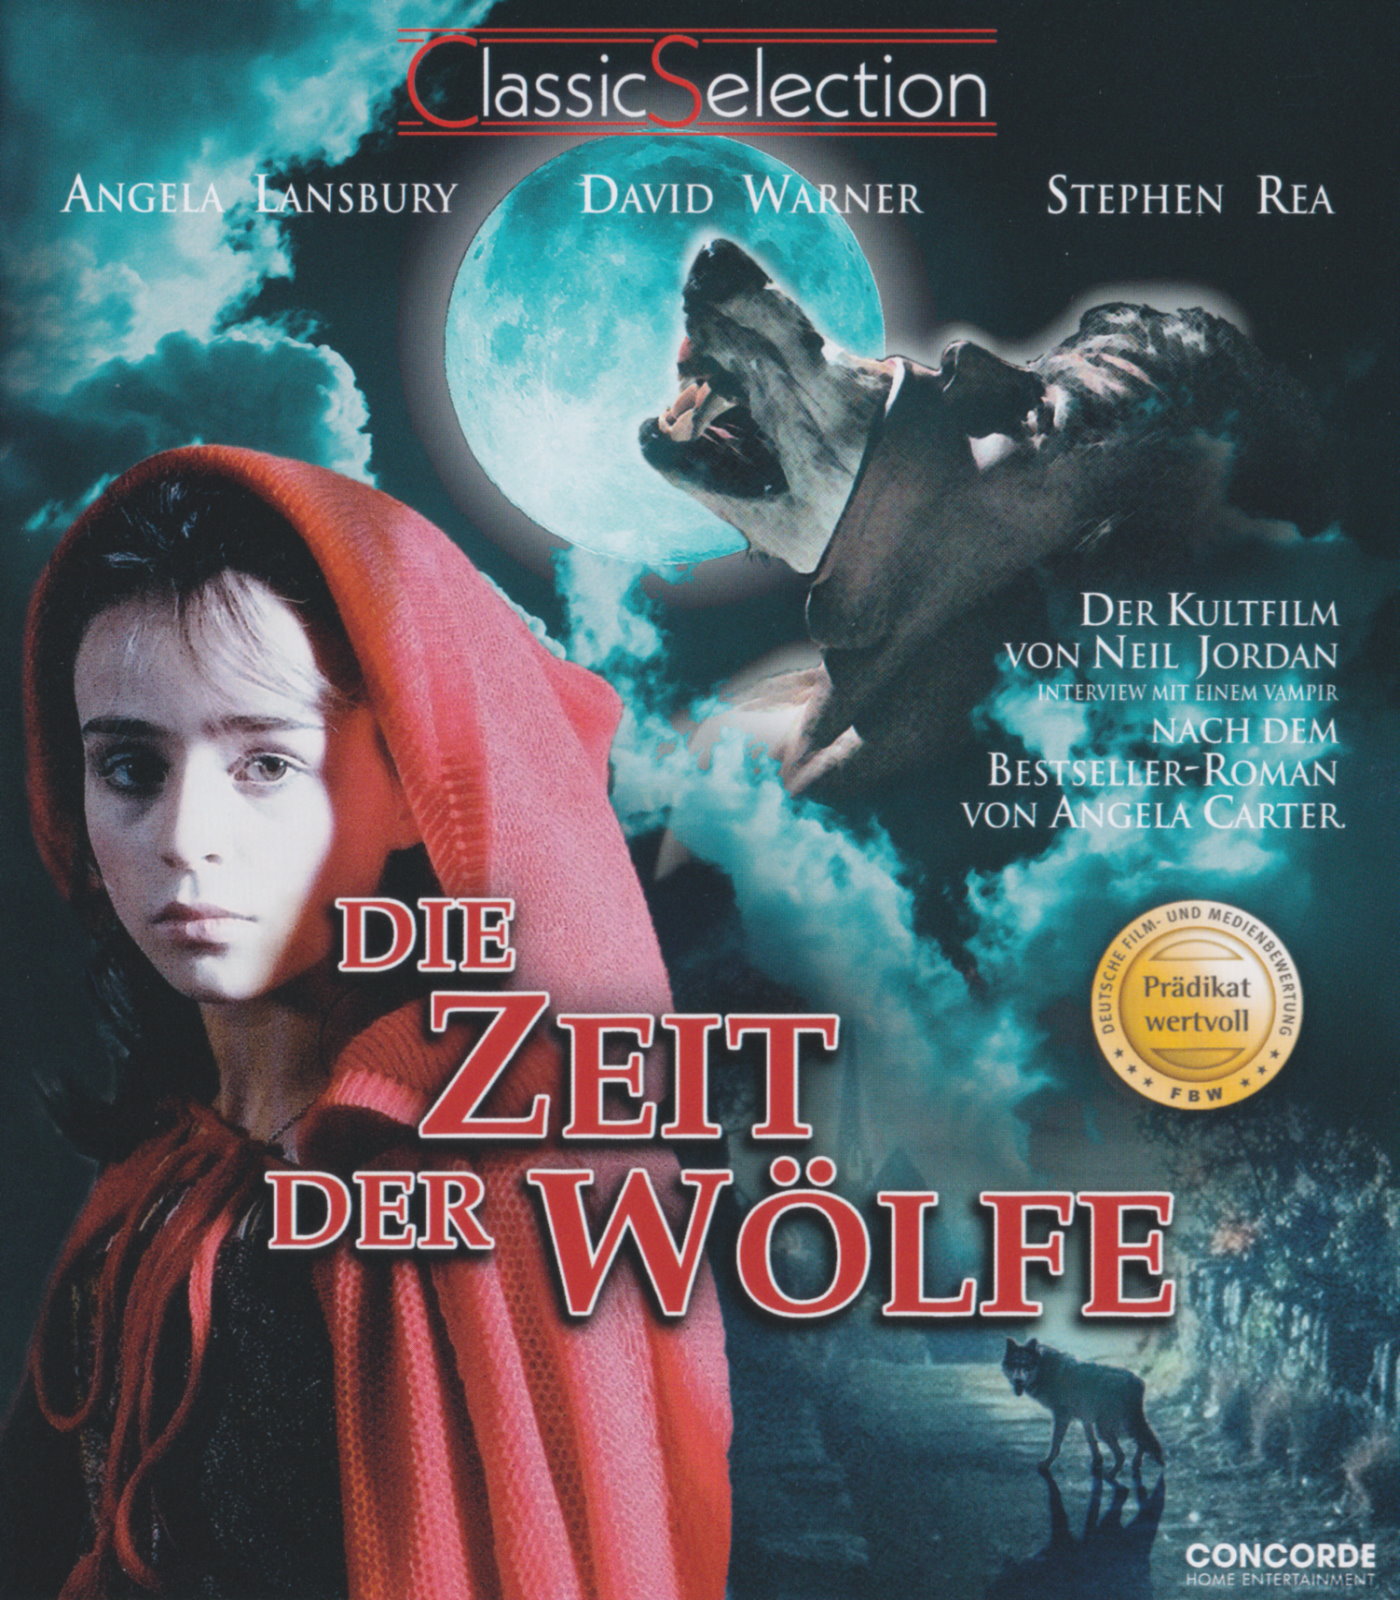 Cover - Die Zeit der Wölfe.jpg